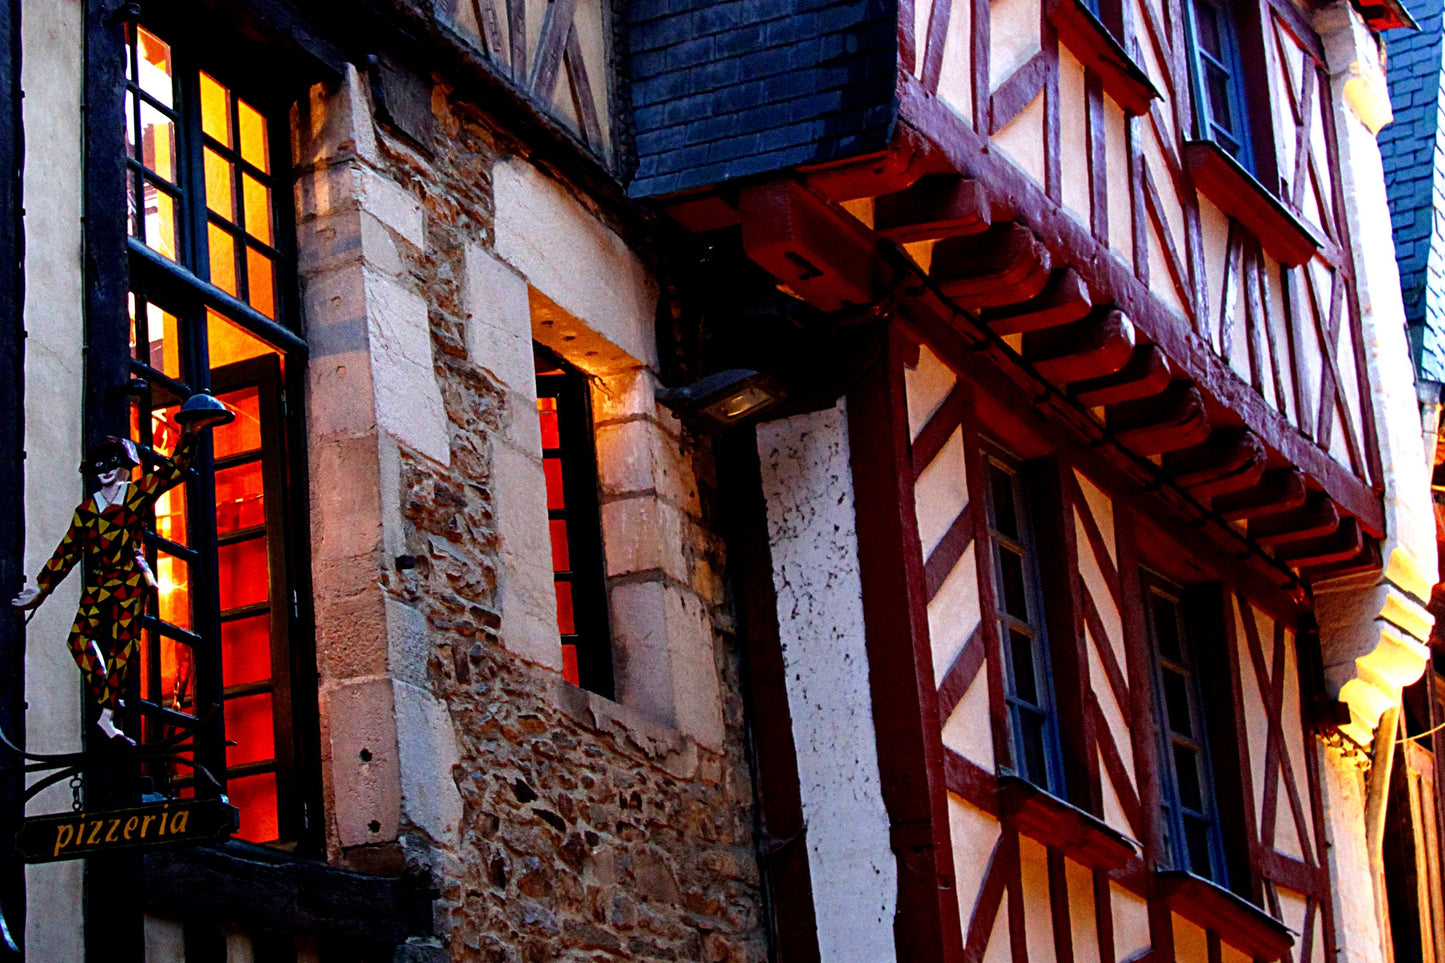 Exclusive Normandy Tour from Paris: Discover Rouen, Honfleur, and Etretat